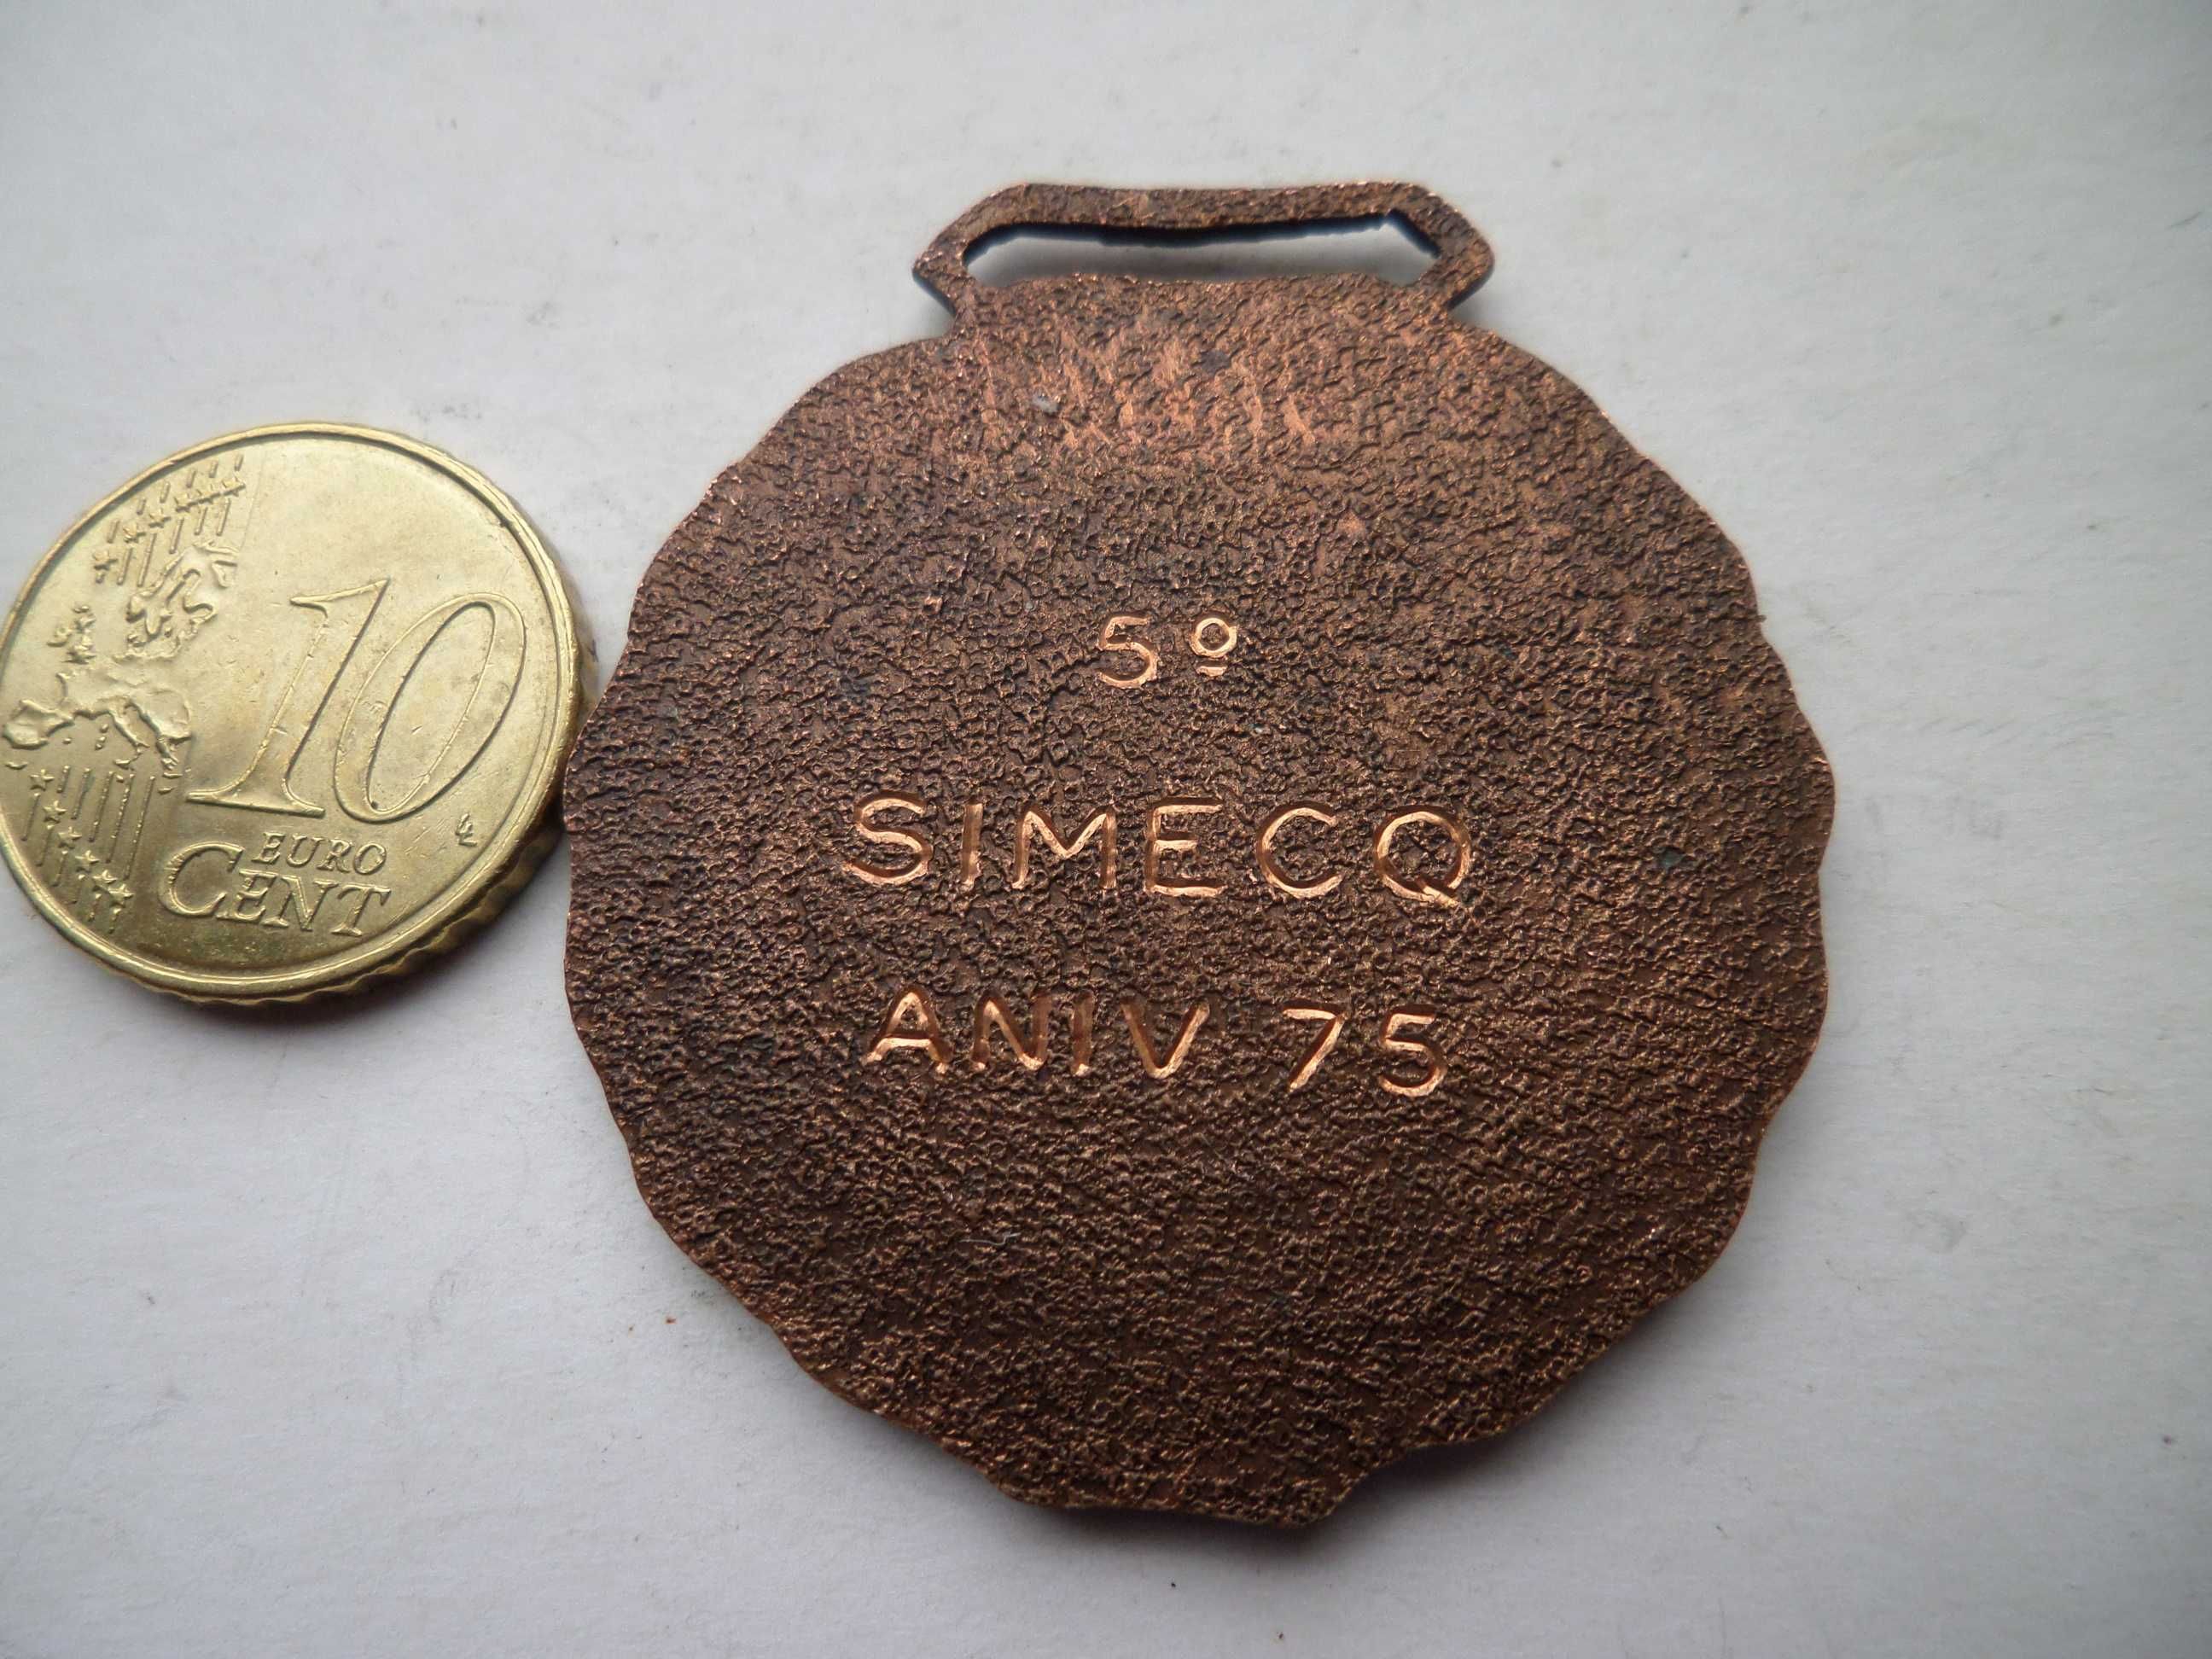 Medalha de Pesca, ano 1975